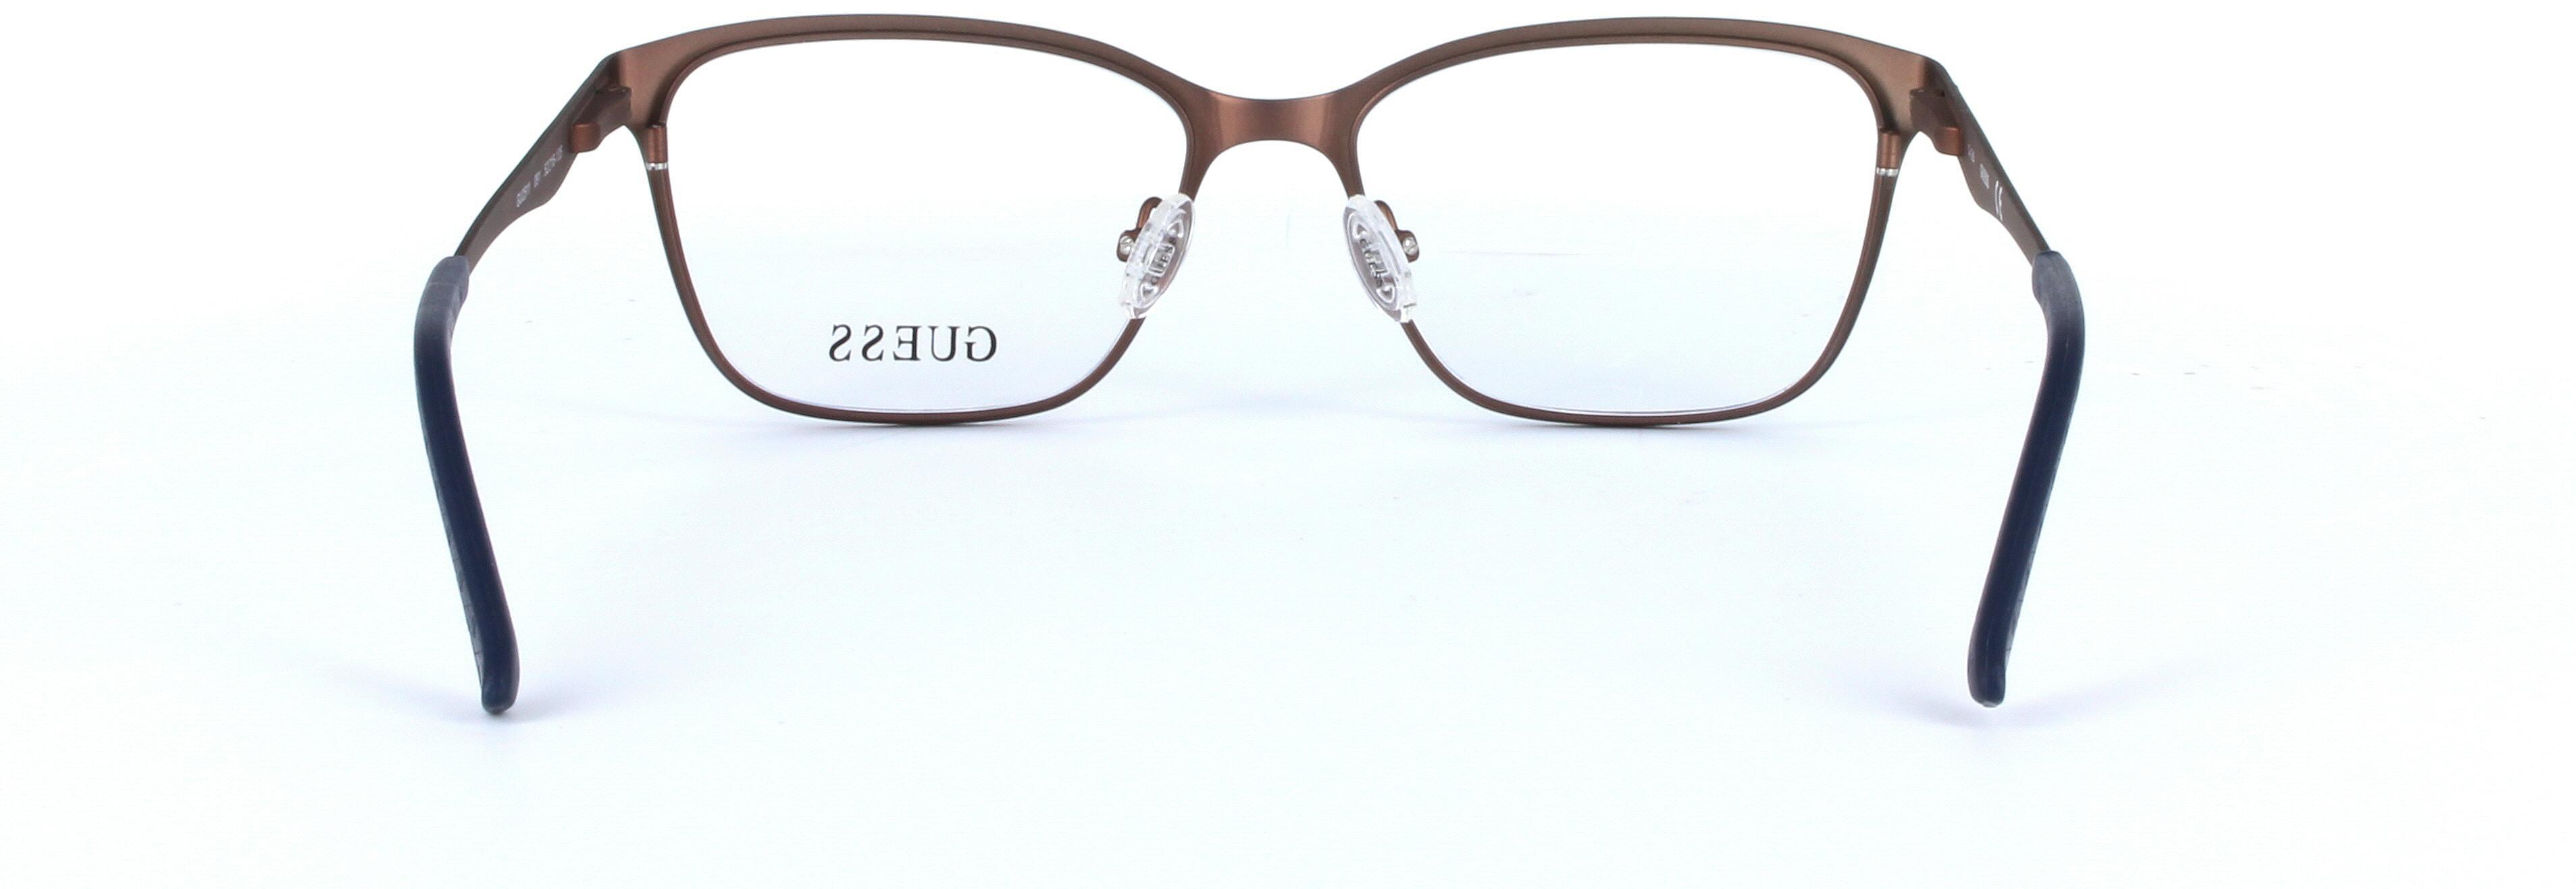 GUESS (GU2511-091) Blue Full Rim Oval Rectangular Metal Glasses - Image View 3